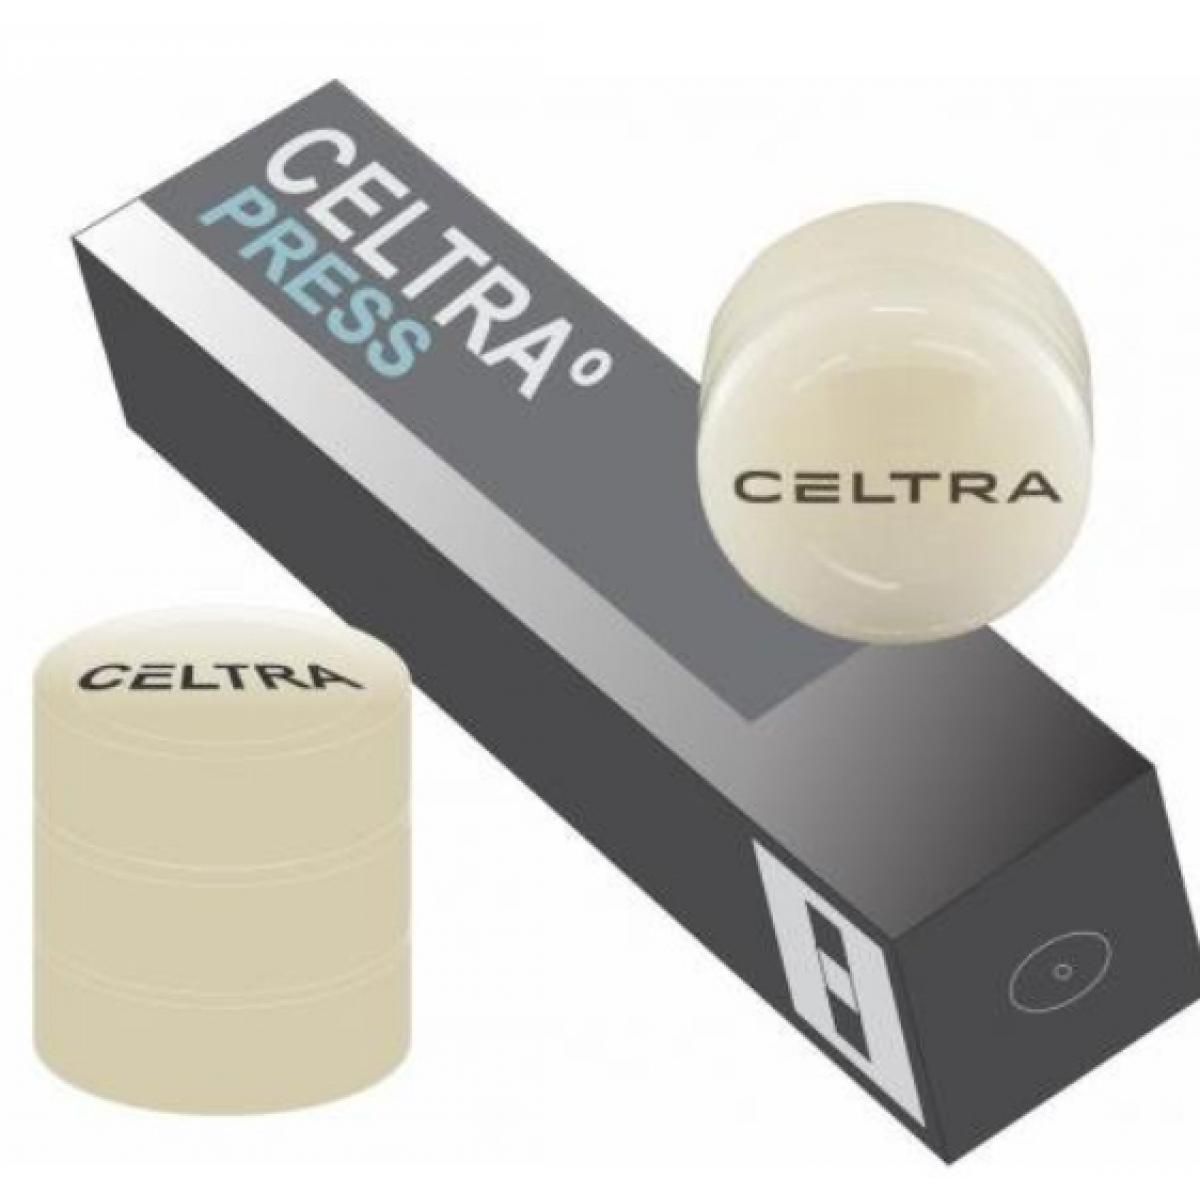 CELTRA PRESS MT D3 3 X 6 GR DENTSPLY -